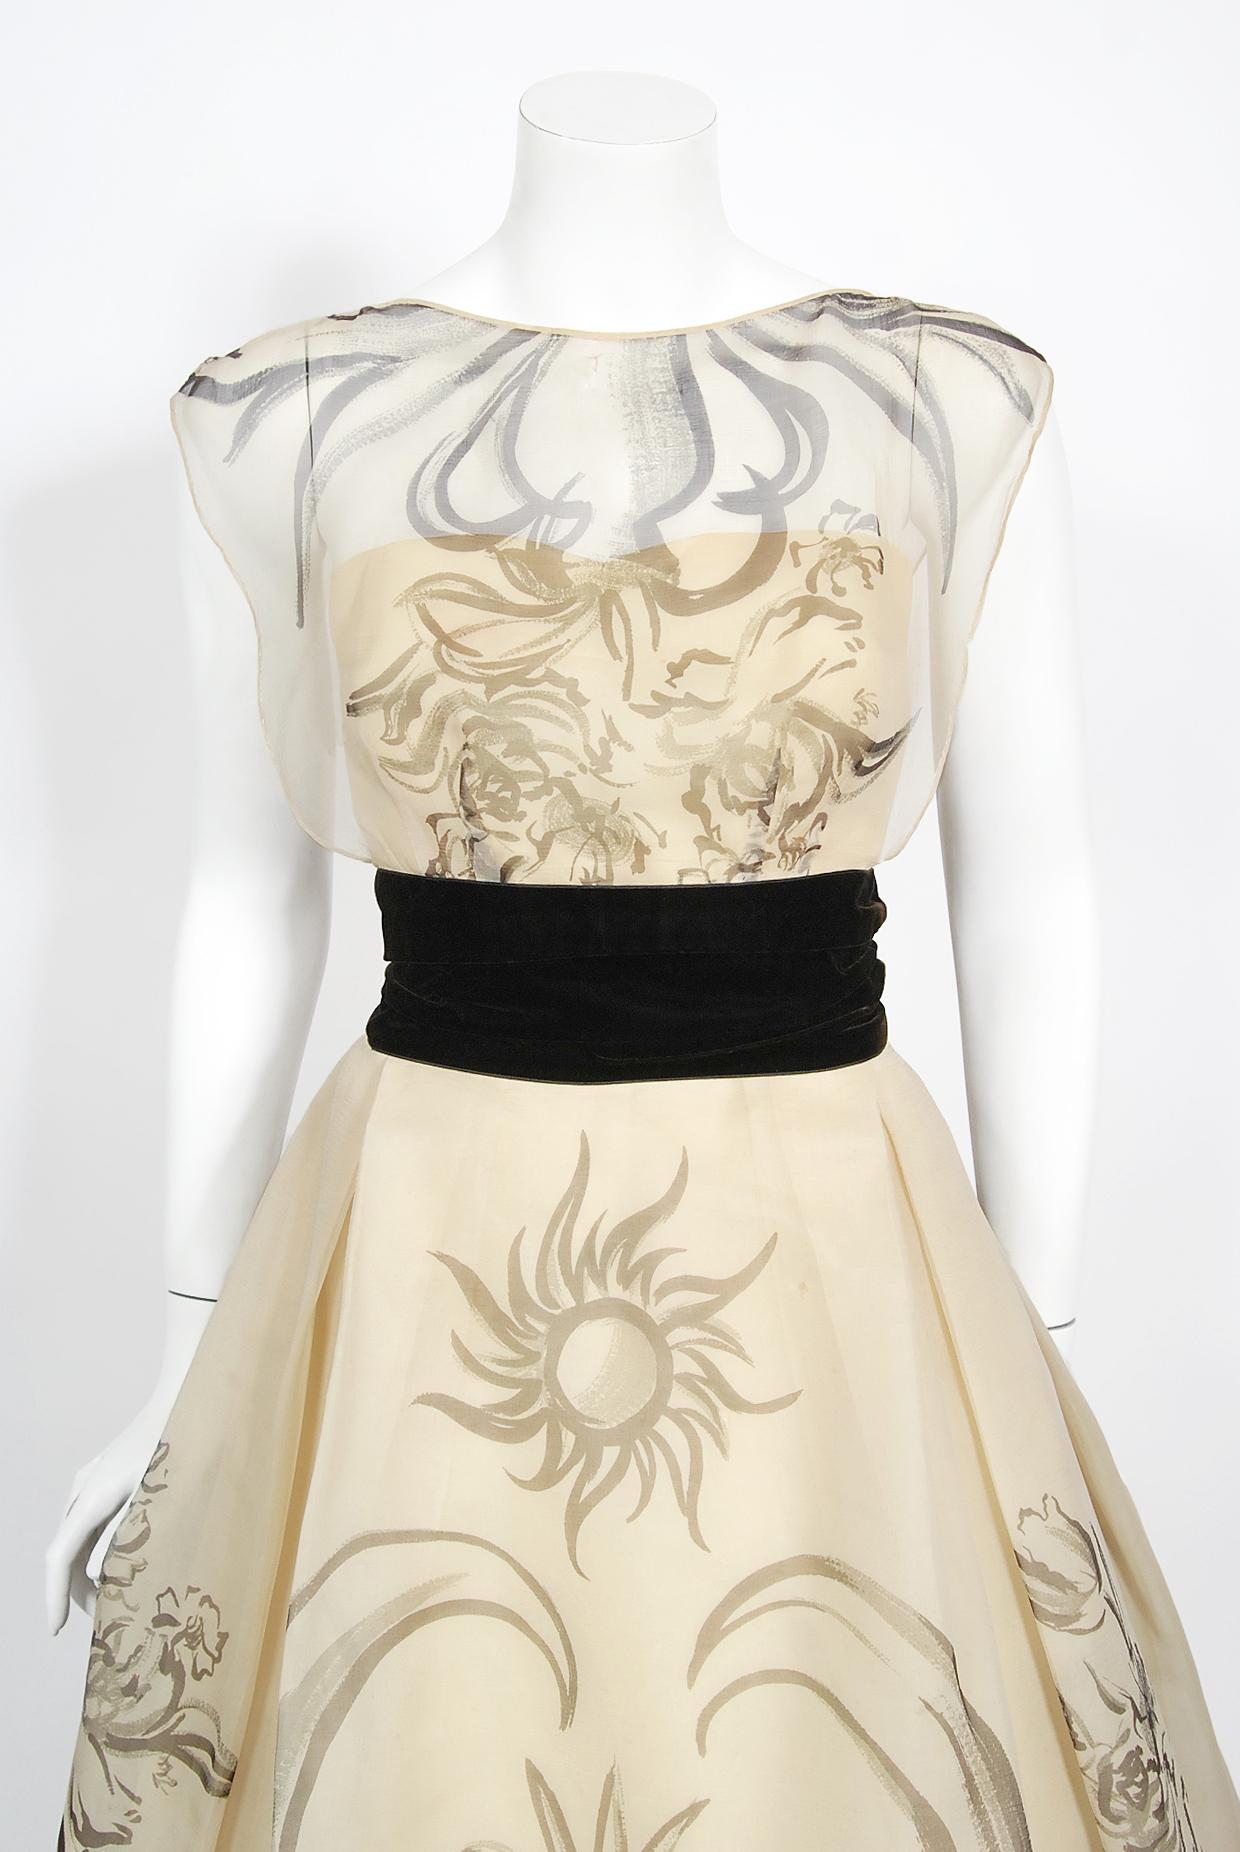 Eine atemberaubende Hattie Carnegie Couture skurrilen handbemalte Creme Seide Kleid aus den frühen 1950er Jahren. Hattie Carnegie führte ein Modeimperium, das fast drei Jahrzehnte lang das Tempo der amerikanischen Mode bestimmte. Sie importierte